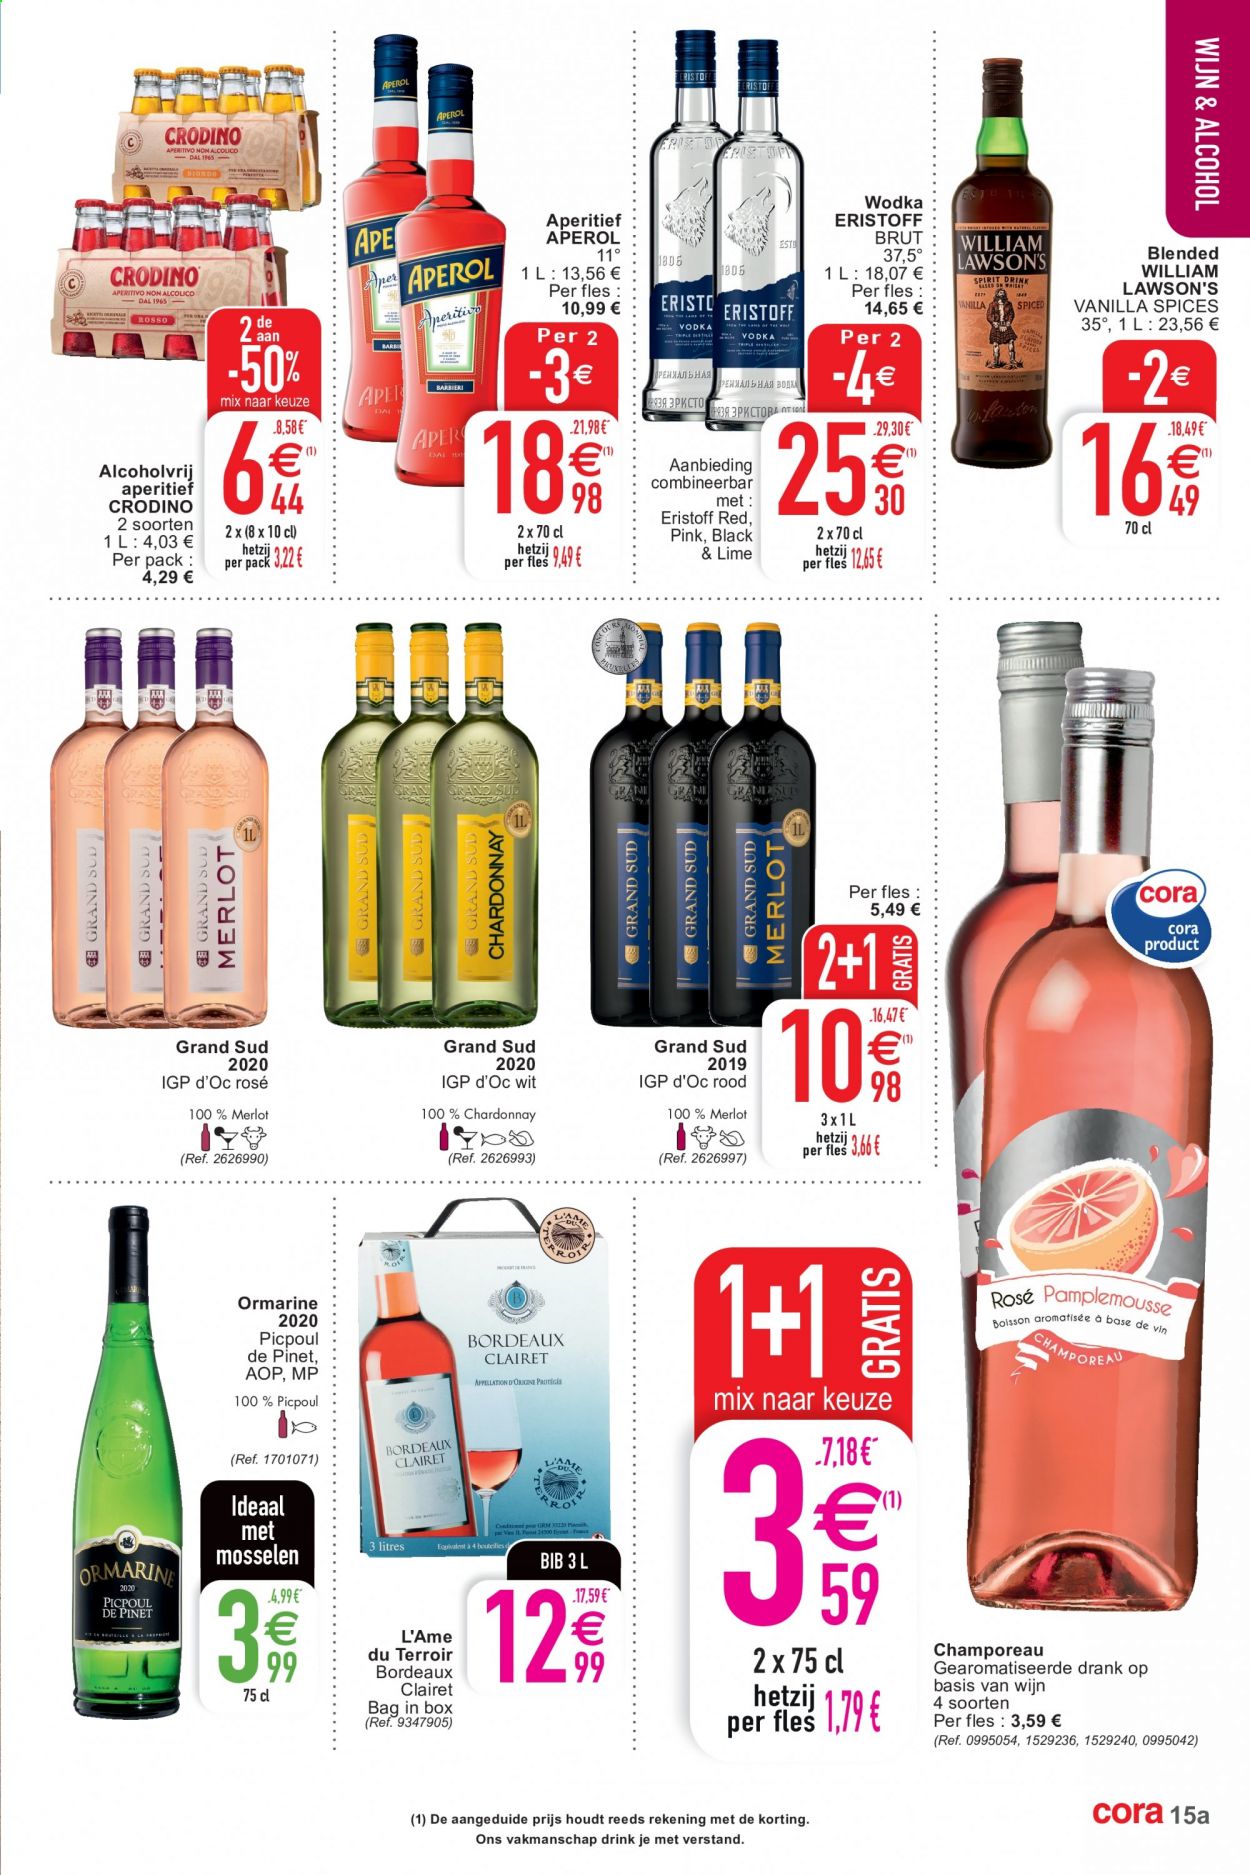 thumbnail - Cora-aanbieding - 13/07/2021 - 19/07/2021 -  producten in de aanbieding - Chardonnay, Merlot, wijn, Aperol. Pagina 15.